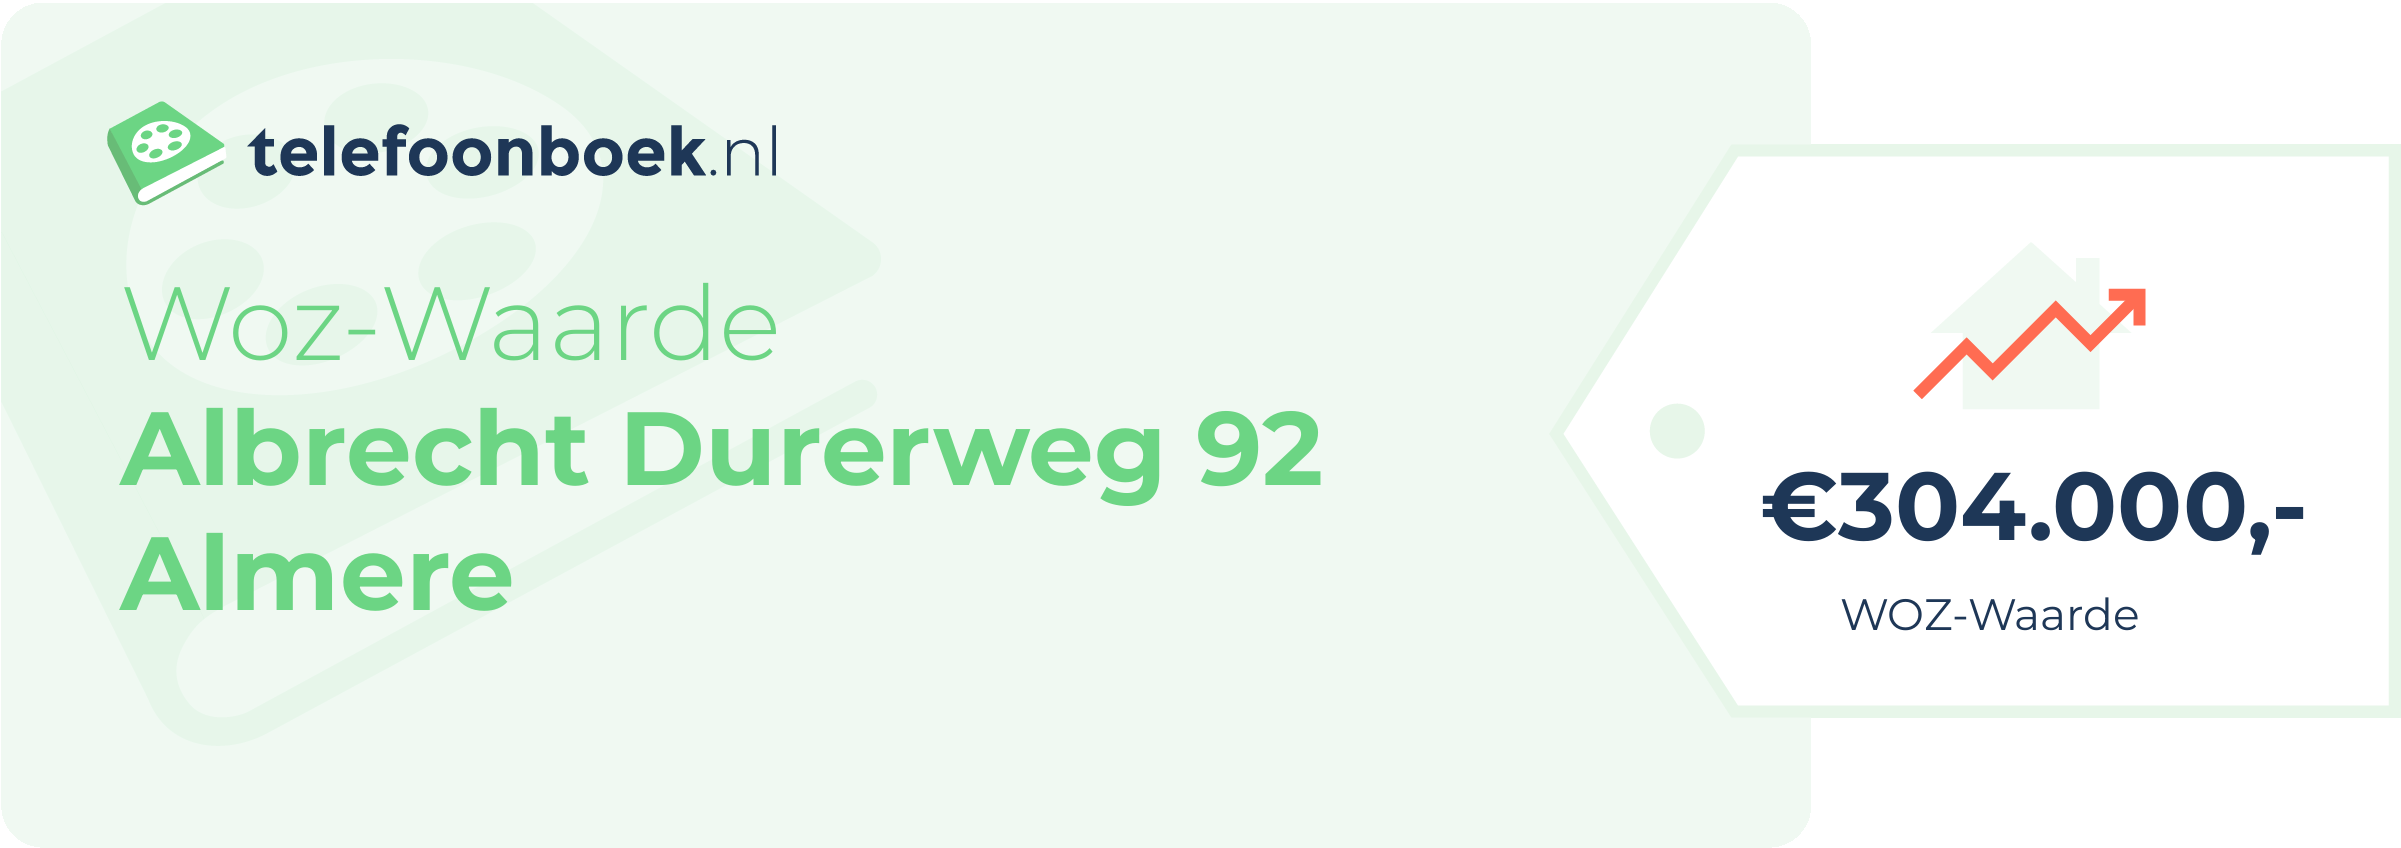 WOZ-waarde Albrecht Durerweg 92 Almere